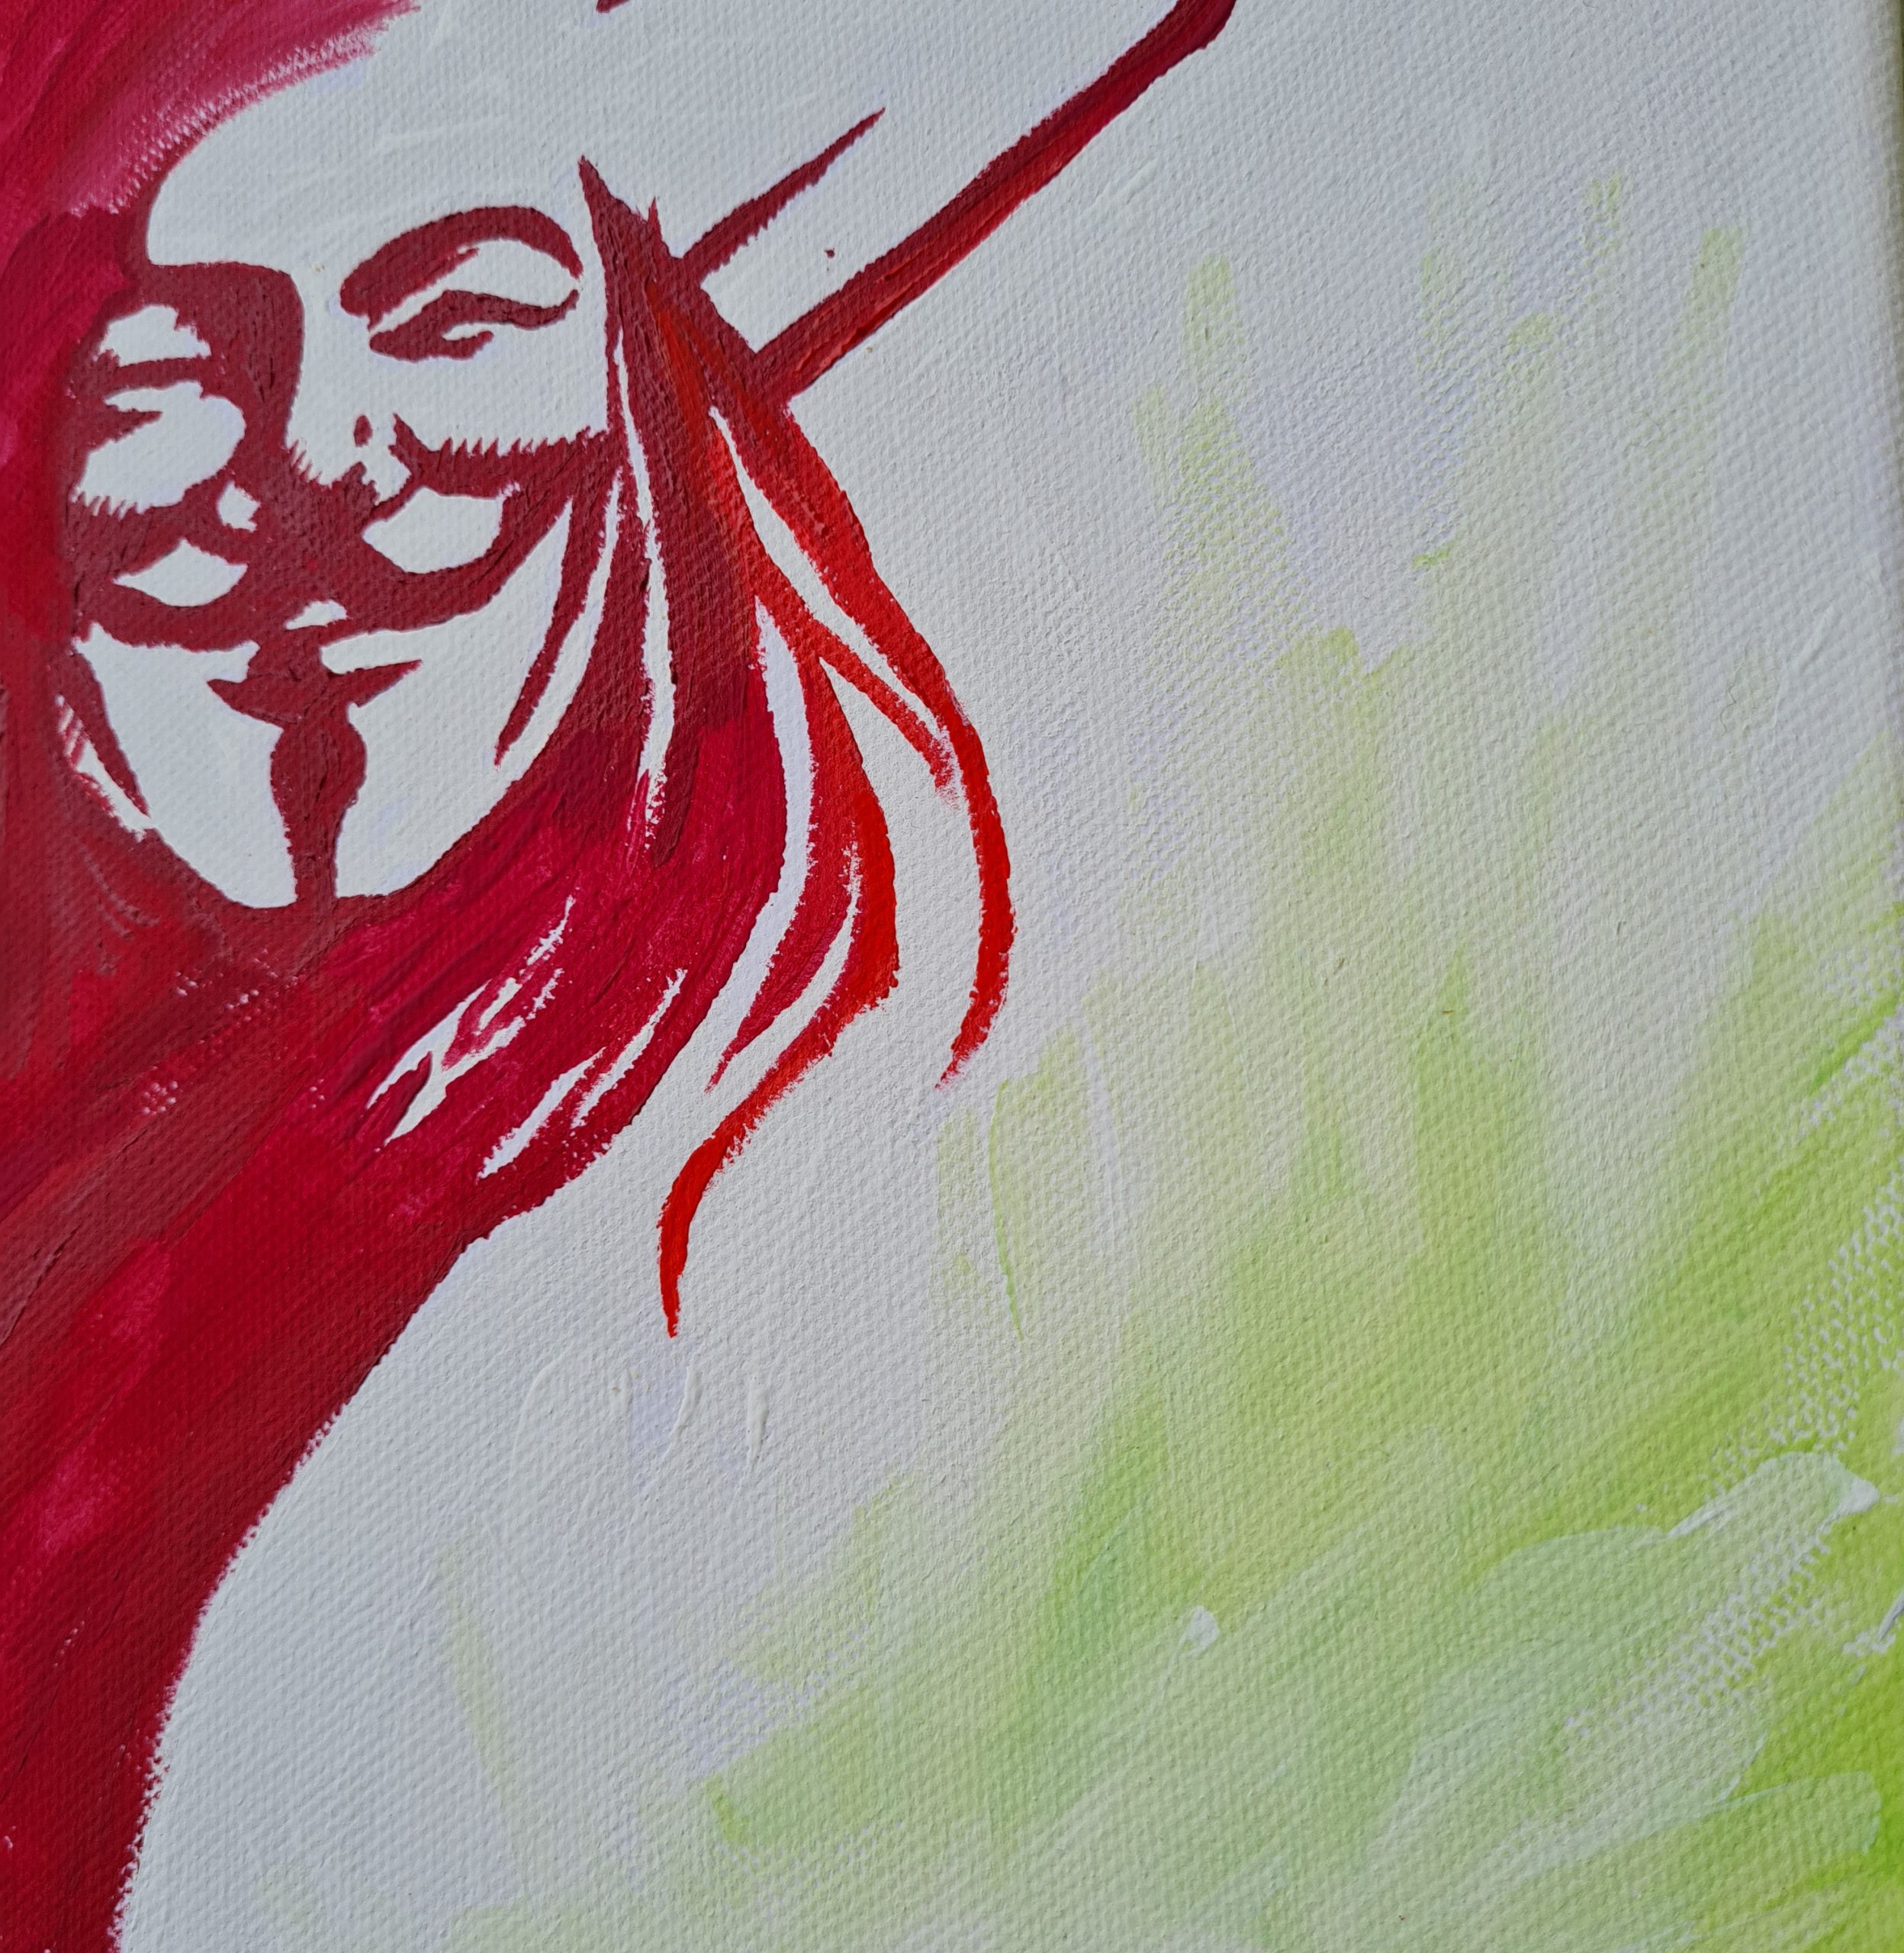 Pop art; Striking Art; V for Vendetta